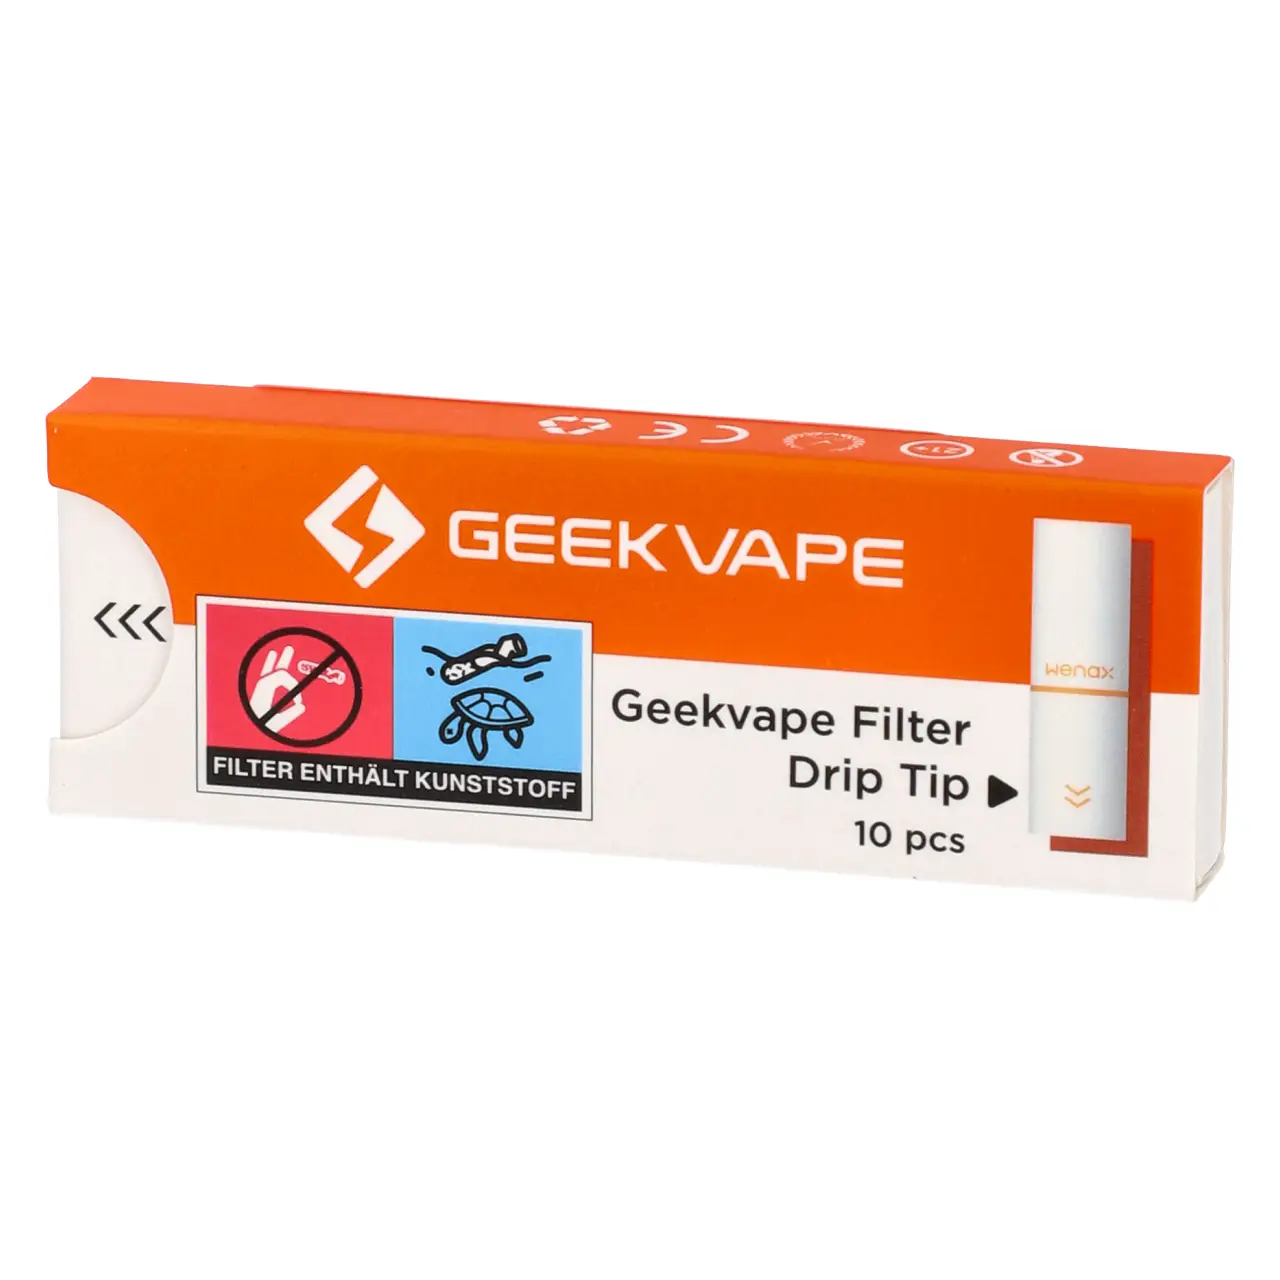 GeekVape Filter Drip Tip 10-er Packung